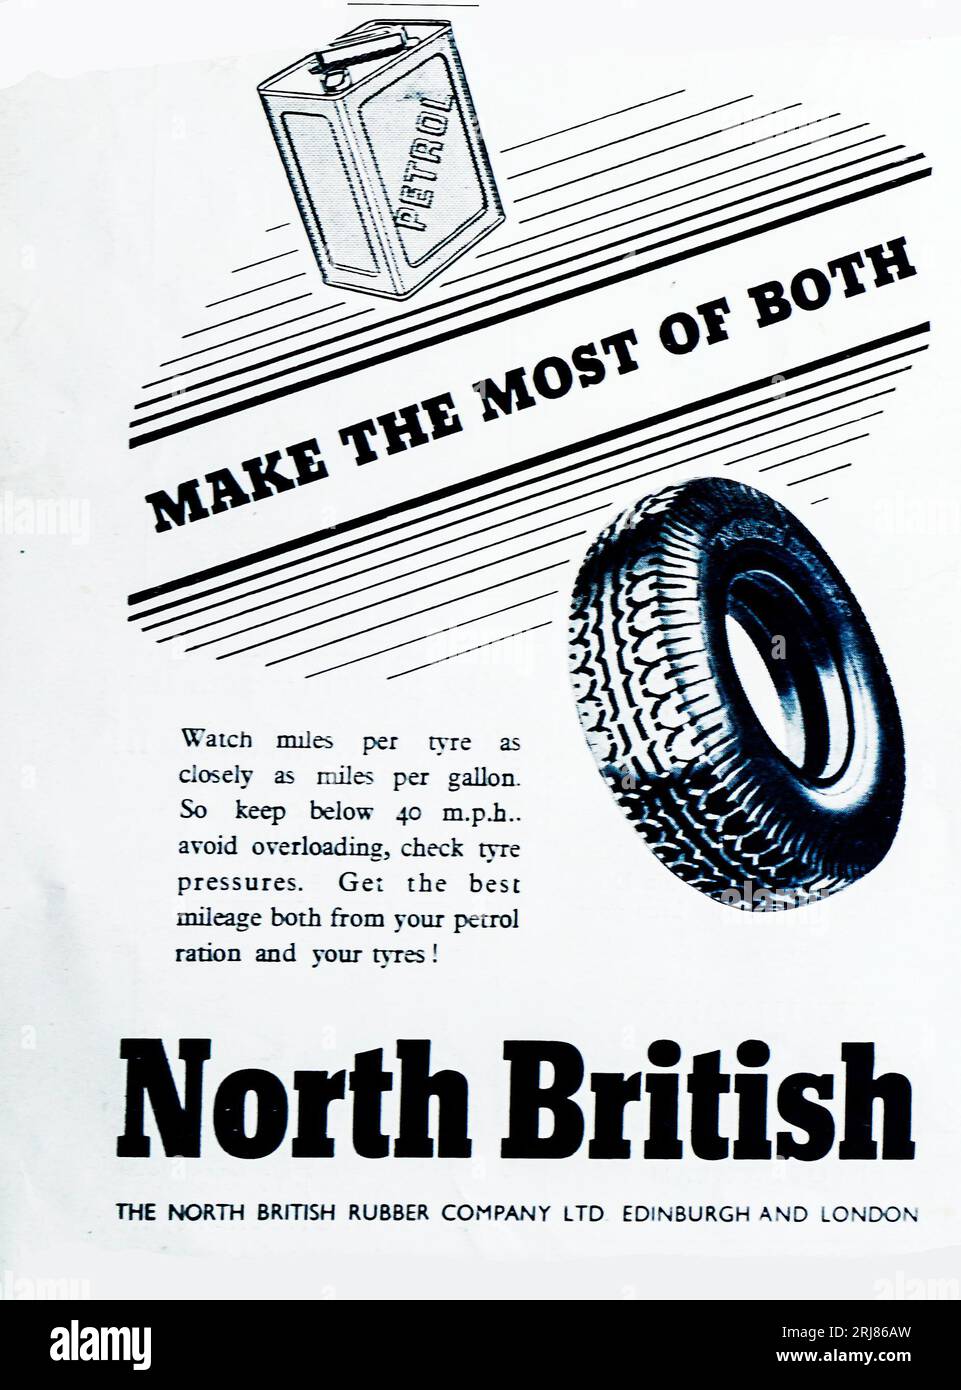 Eine Kriegsanzeige 1945 für nordbritische Reifen. Die North British Rubber Company wurde 1857 gegründet und beschäftigte 600 Mitarbeiter in Edinburgh, Schottland. Dem Unternehmen wird die Erfindung des abnehmbaren Luftreifens zugeschrieben. Das Patent wurde später an die Dunlop Tyre Company verkauft. Während des Zweiten Weltkriegs produzierten sie auch Reifen für Militärfahrzeuge und Gasmasken, 1966 wurde das Unternehmen von Uniroyal gekauft, das die Produktion anderswo in Schottland verlagerte. Stockfoto